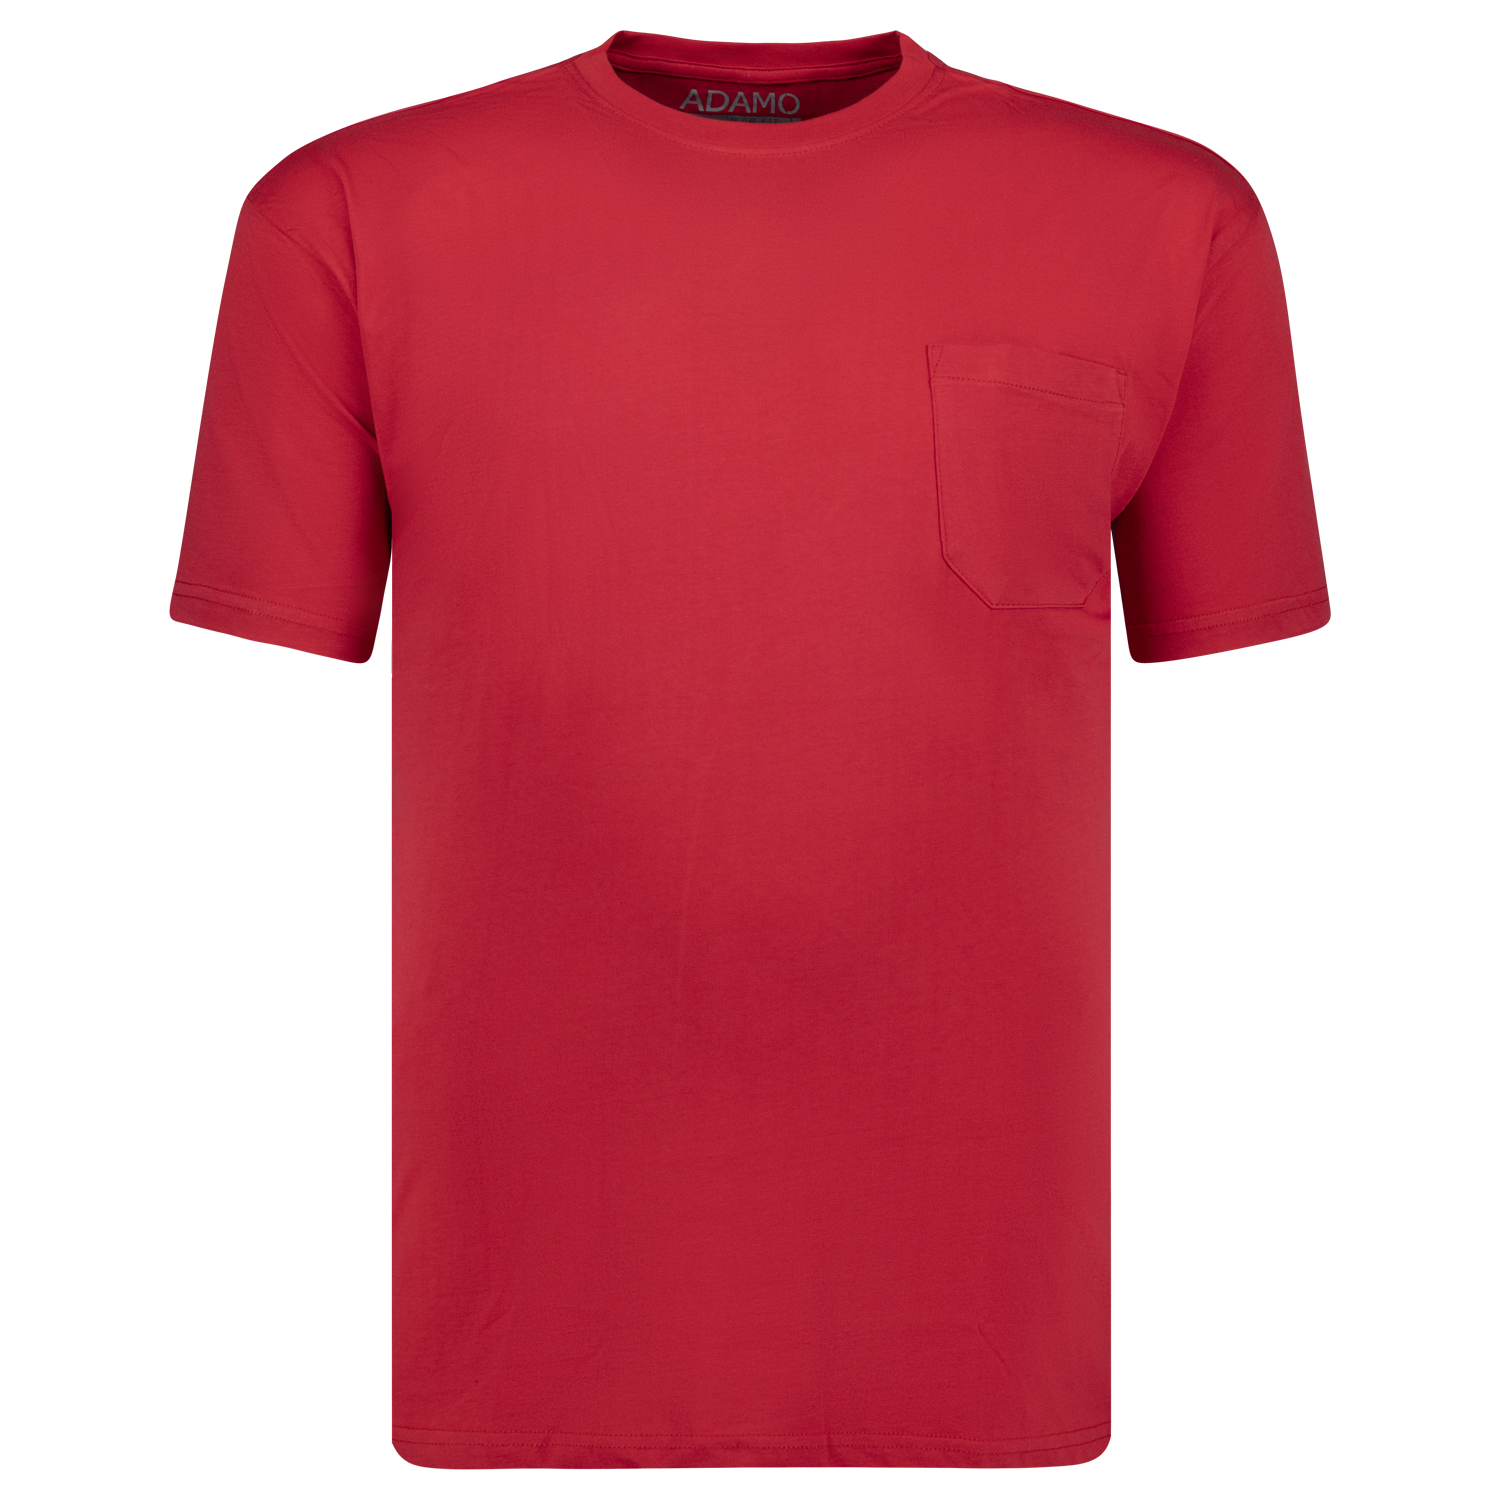 T-shirts série KODY by ADAMO jusqu'à la grande taille 10XL - couleur: rouge